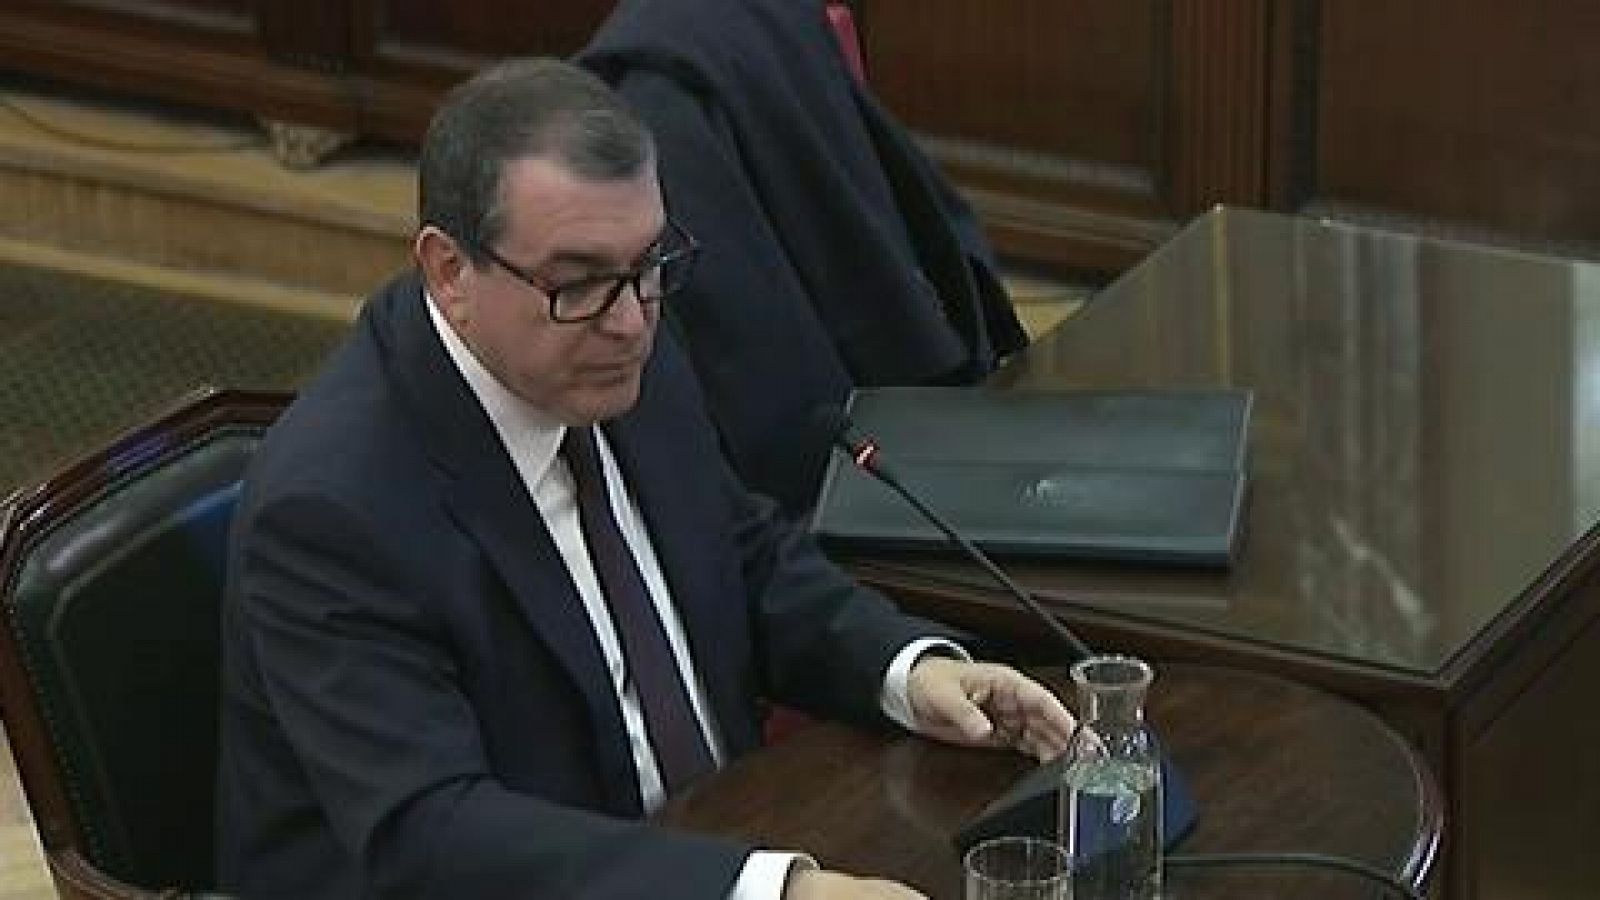 Juicio procés: Jordi Jané reconoce que dimitió como conseller de Interior ante el temor de un referéndum no pactado